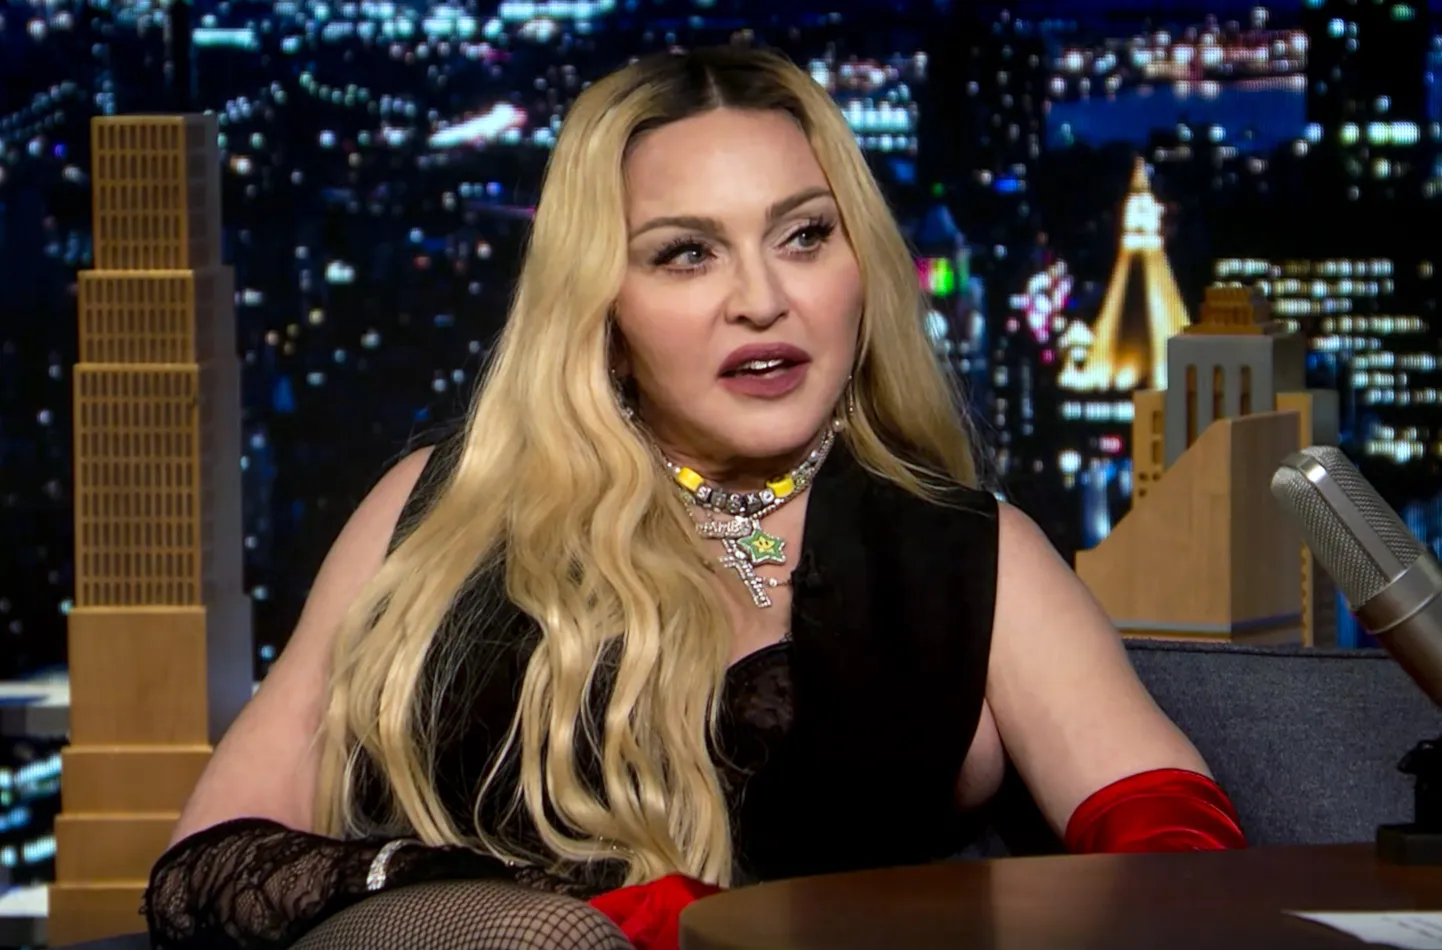 Popstaar Madonna